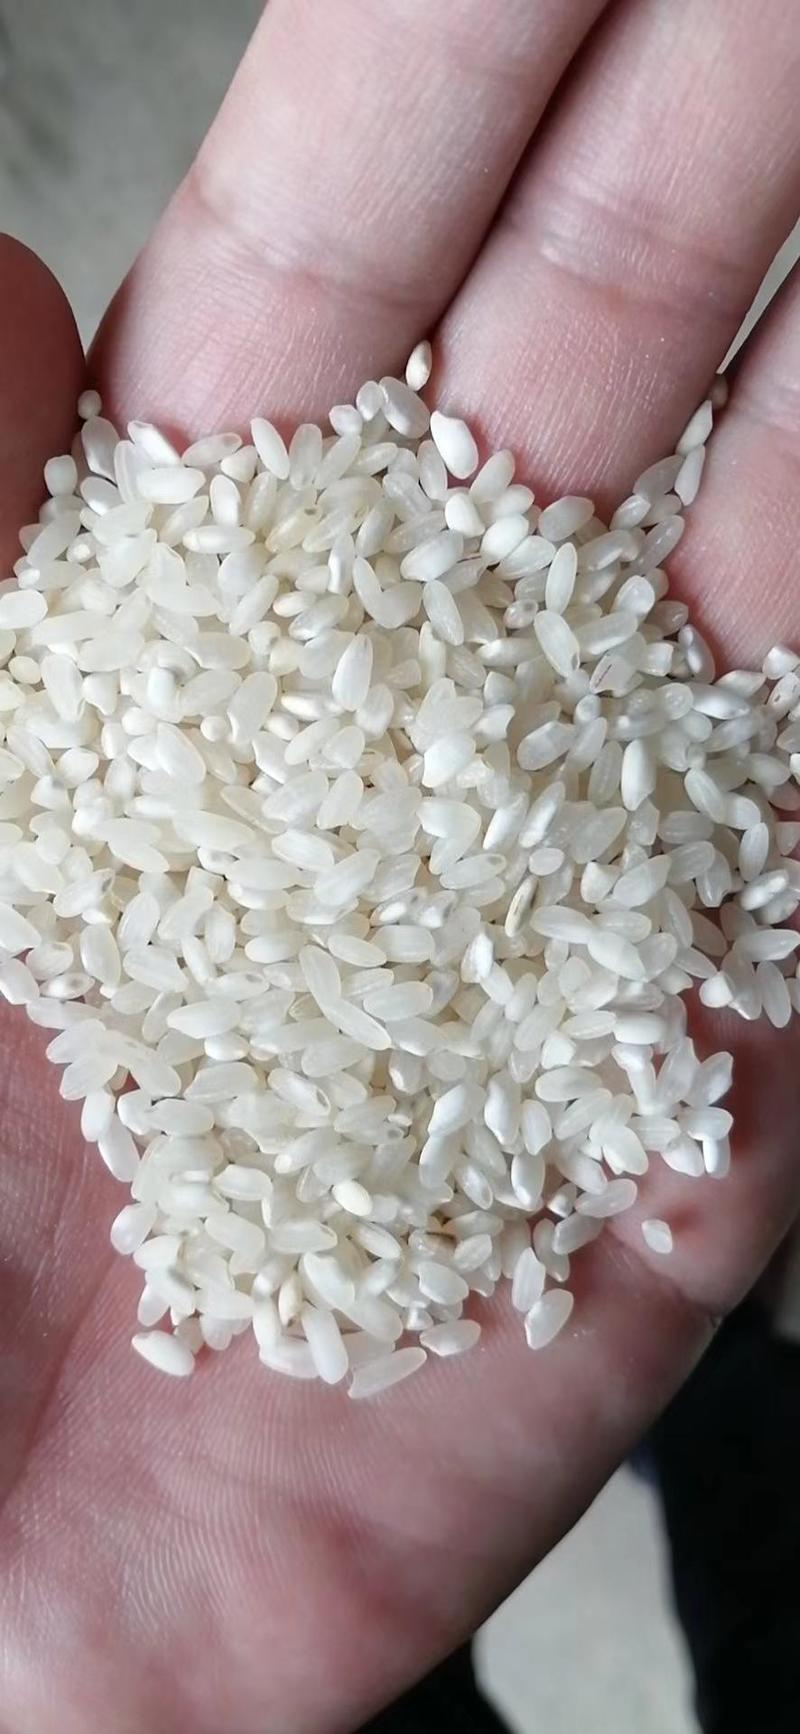 湖南籼米桂潮米专业加工米粉米线米皮米糕米豆腐肠粉等深加工